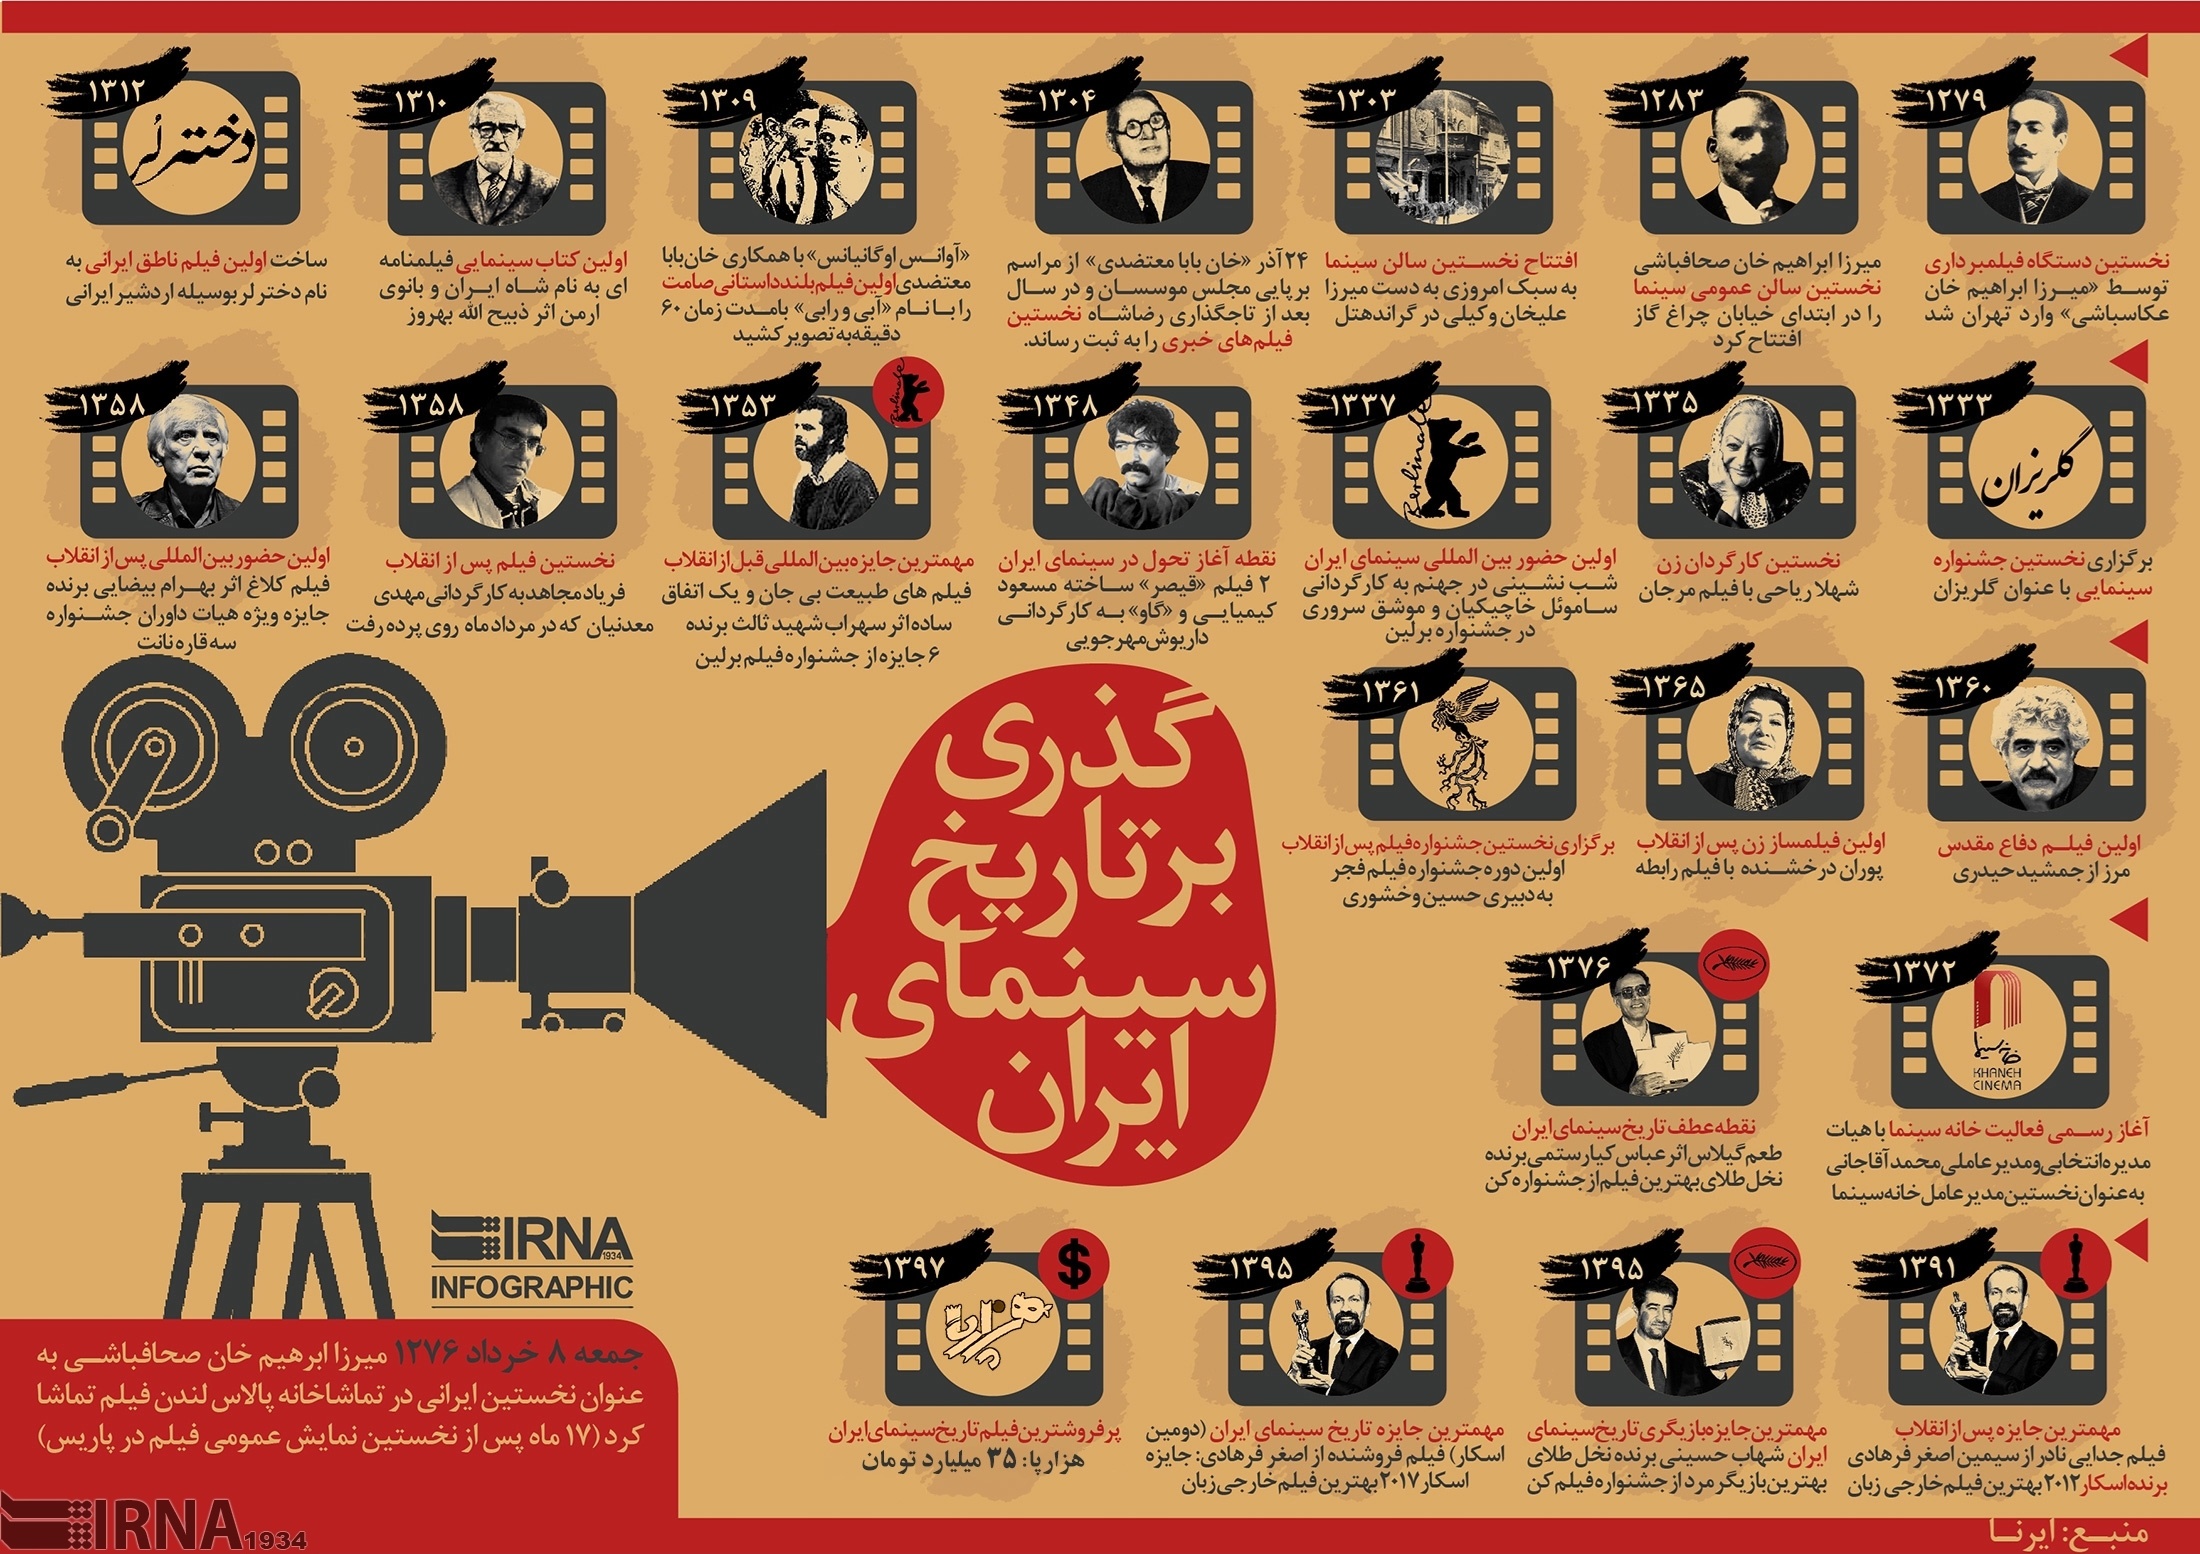 21شهریور «روزملی سینما» و نیم نگاهی برتاریخ سینمای ایران